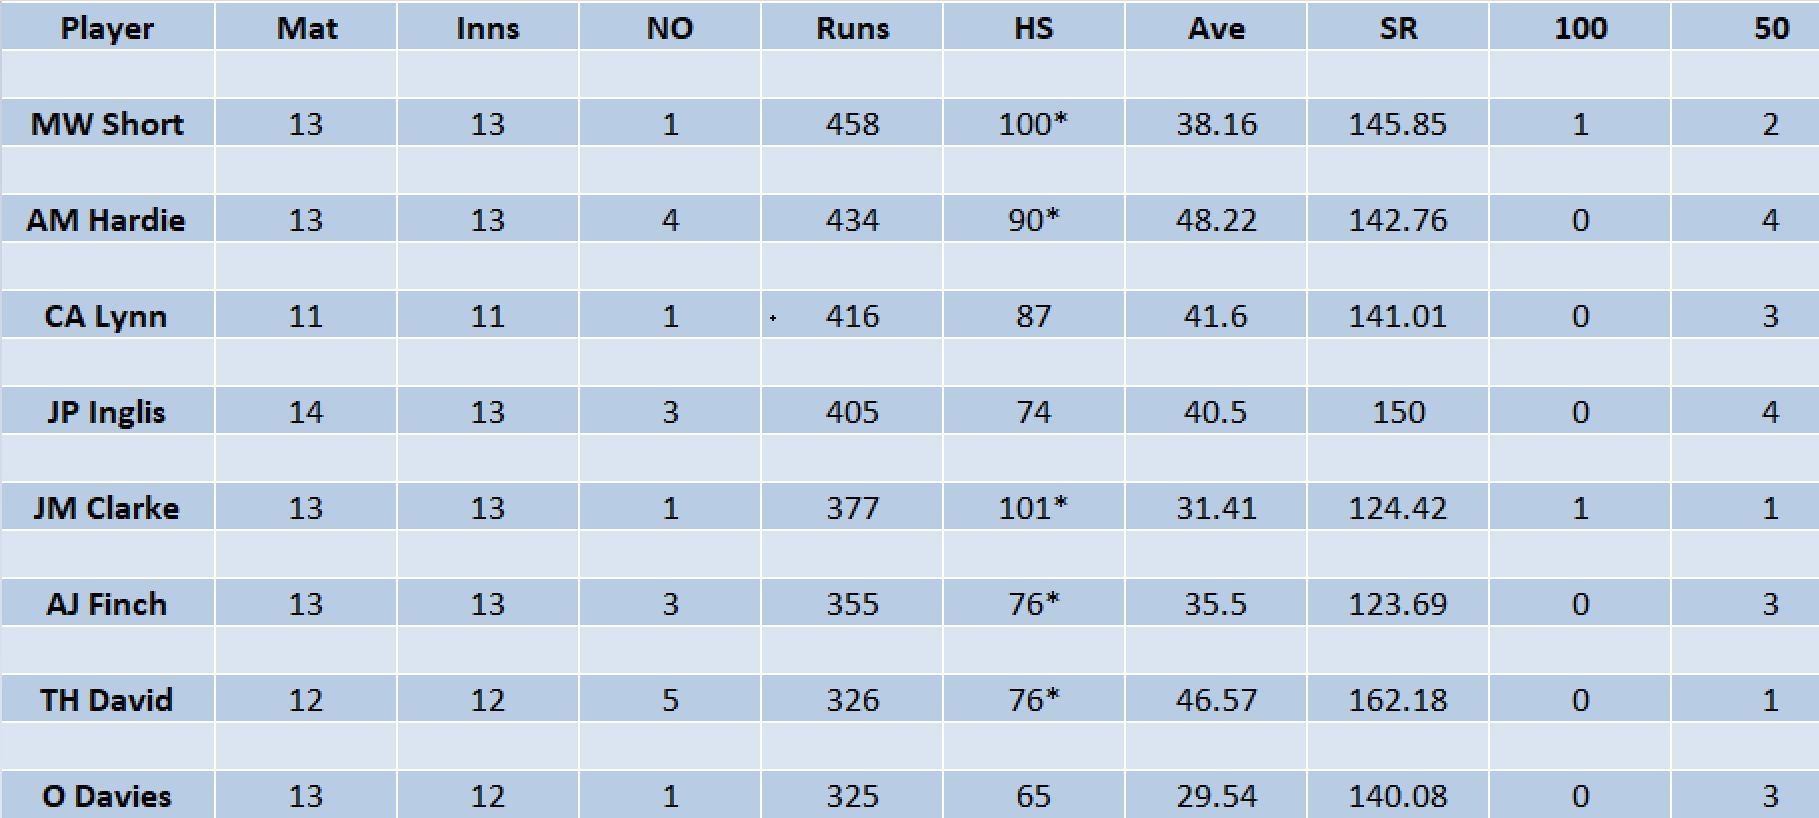 Updated list of run-scorers in BBL 2022-23